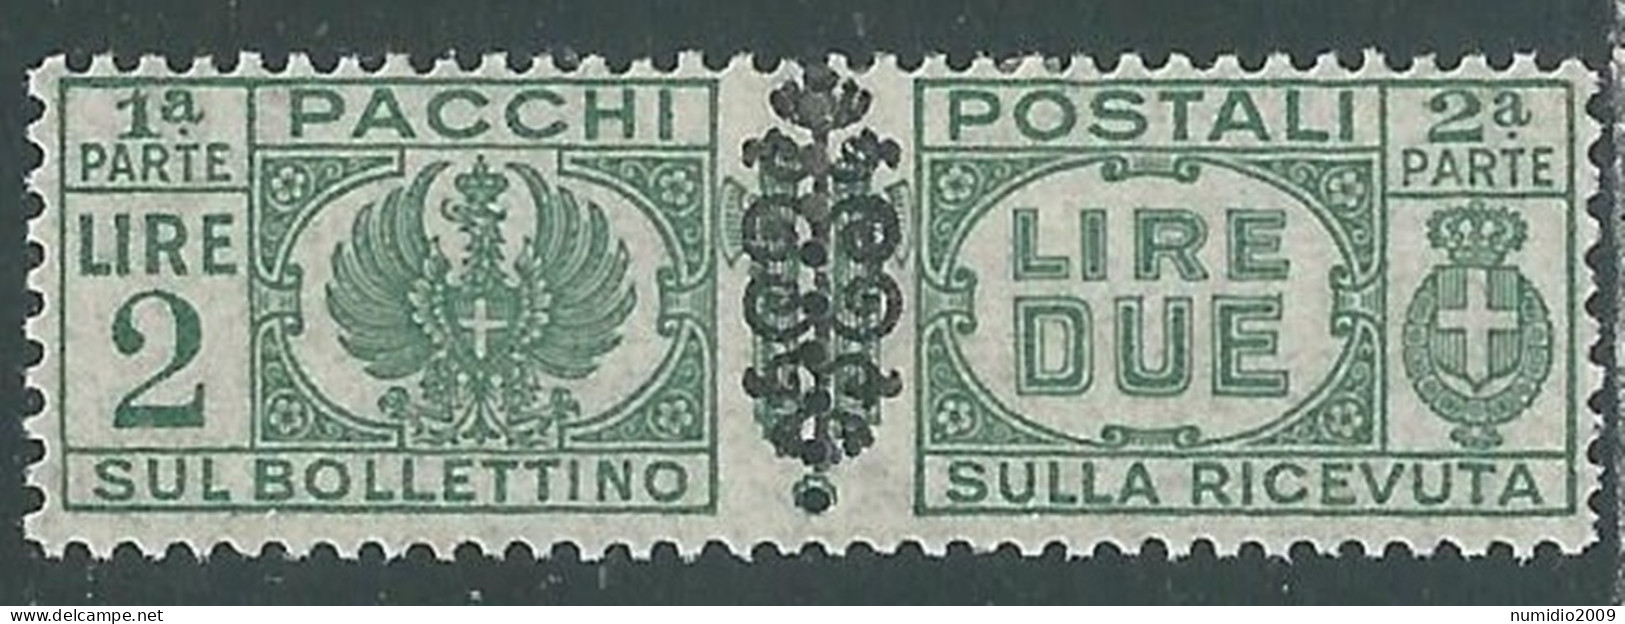 1945 LUOGOTENENZA PACCHI POSTALI 2 LIRE MH * - I18-6 - Paketmarken